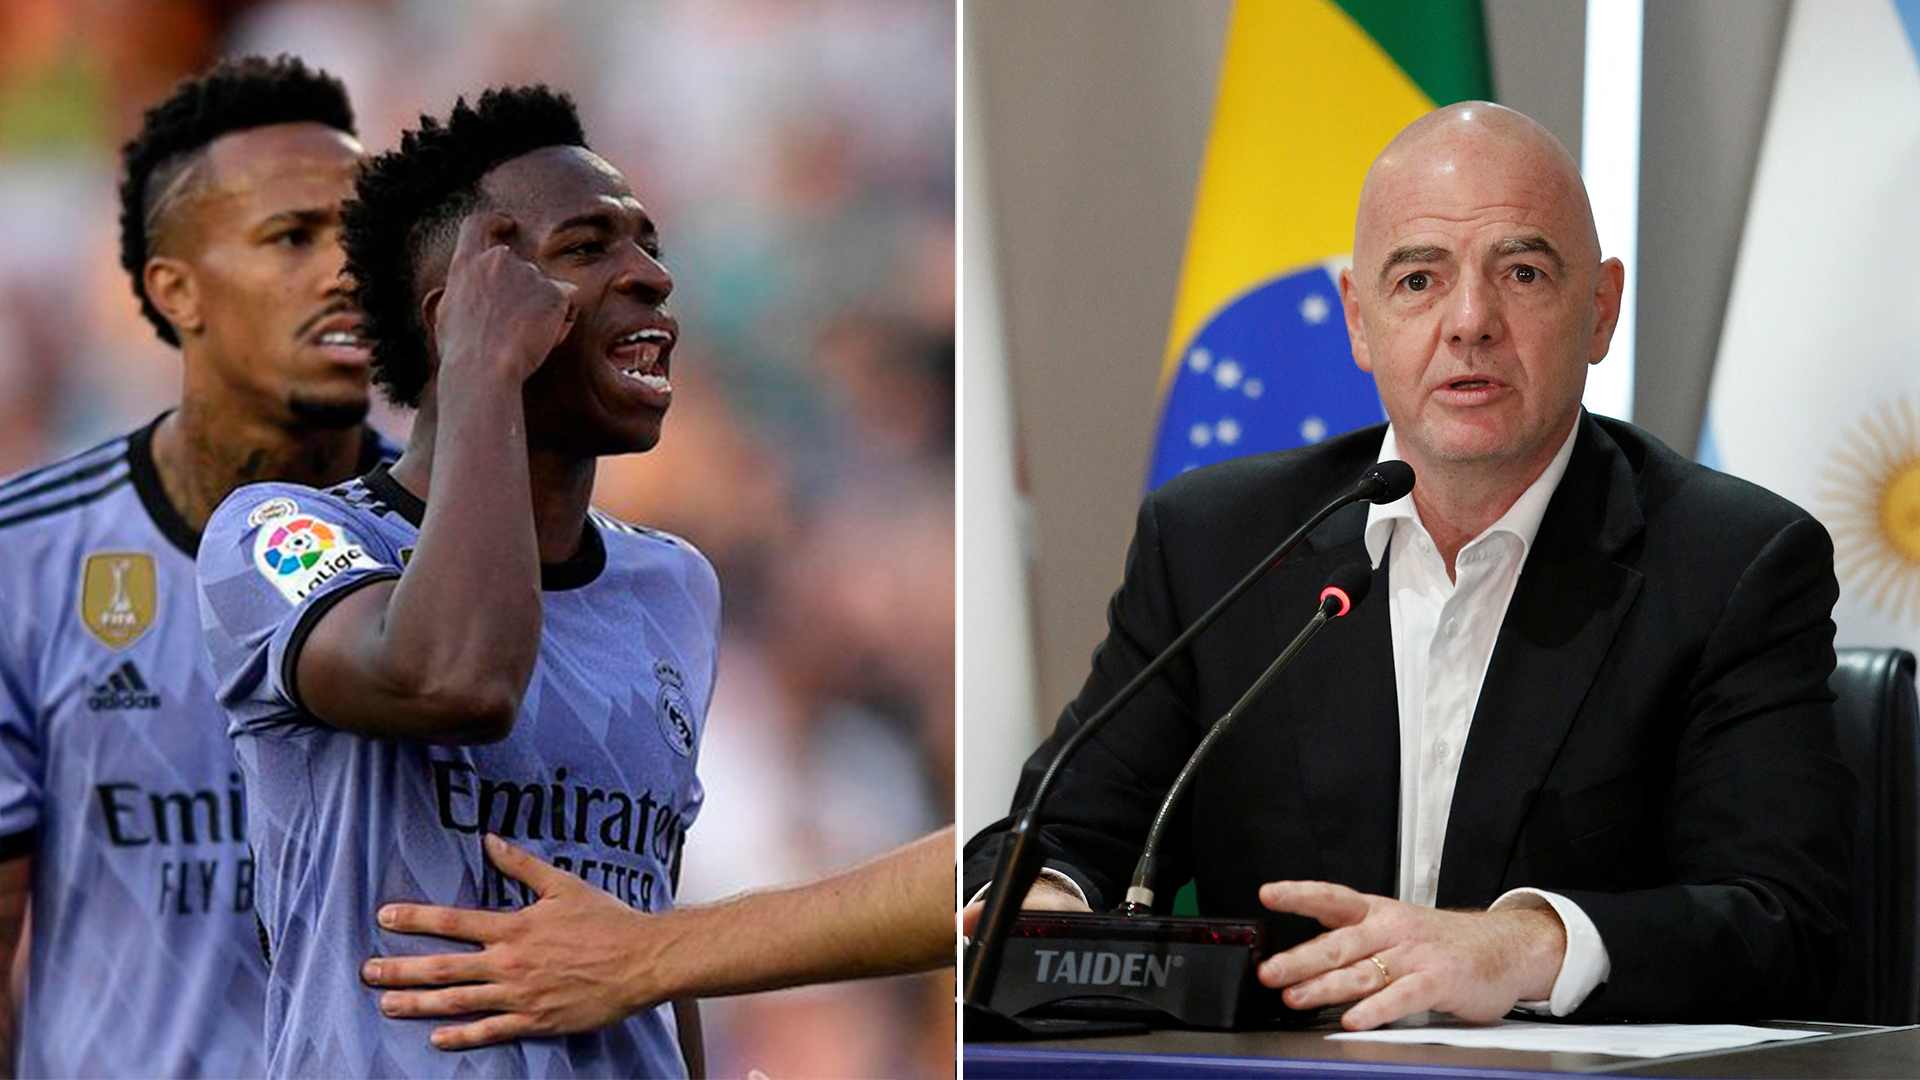 Gianni Infantino se solidarizó con Vinicius Junior: “No hay lugar para el racismo en el fútbol ni en la sociedad”